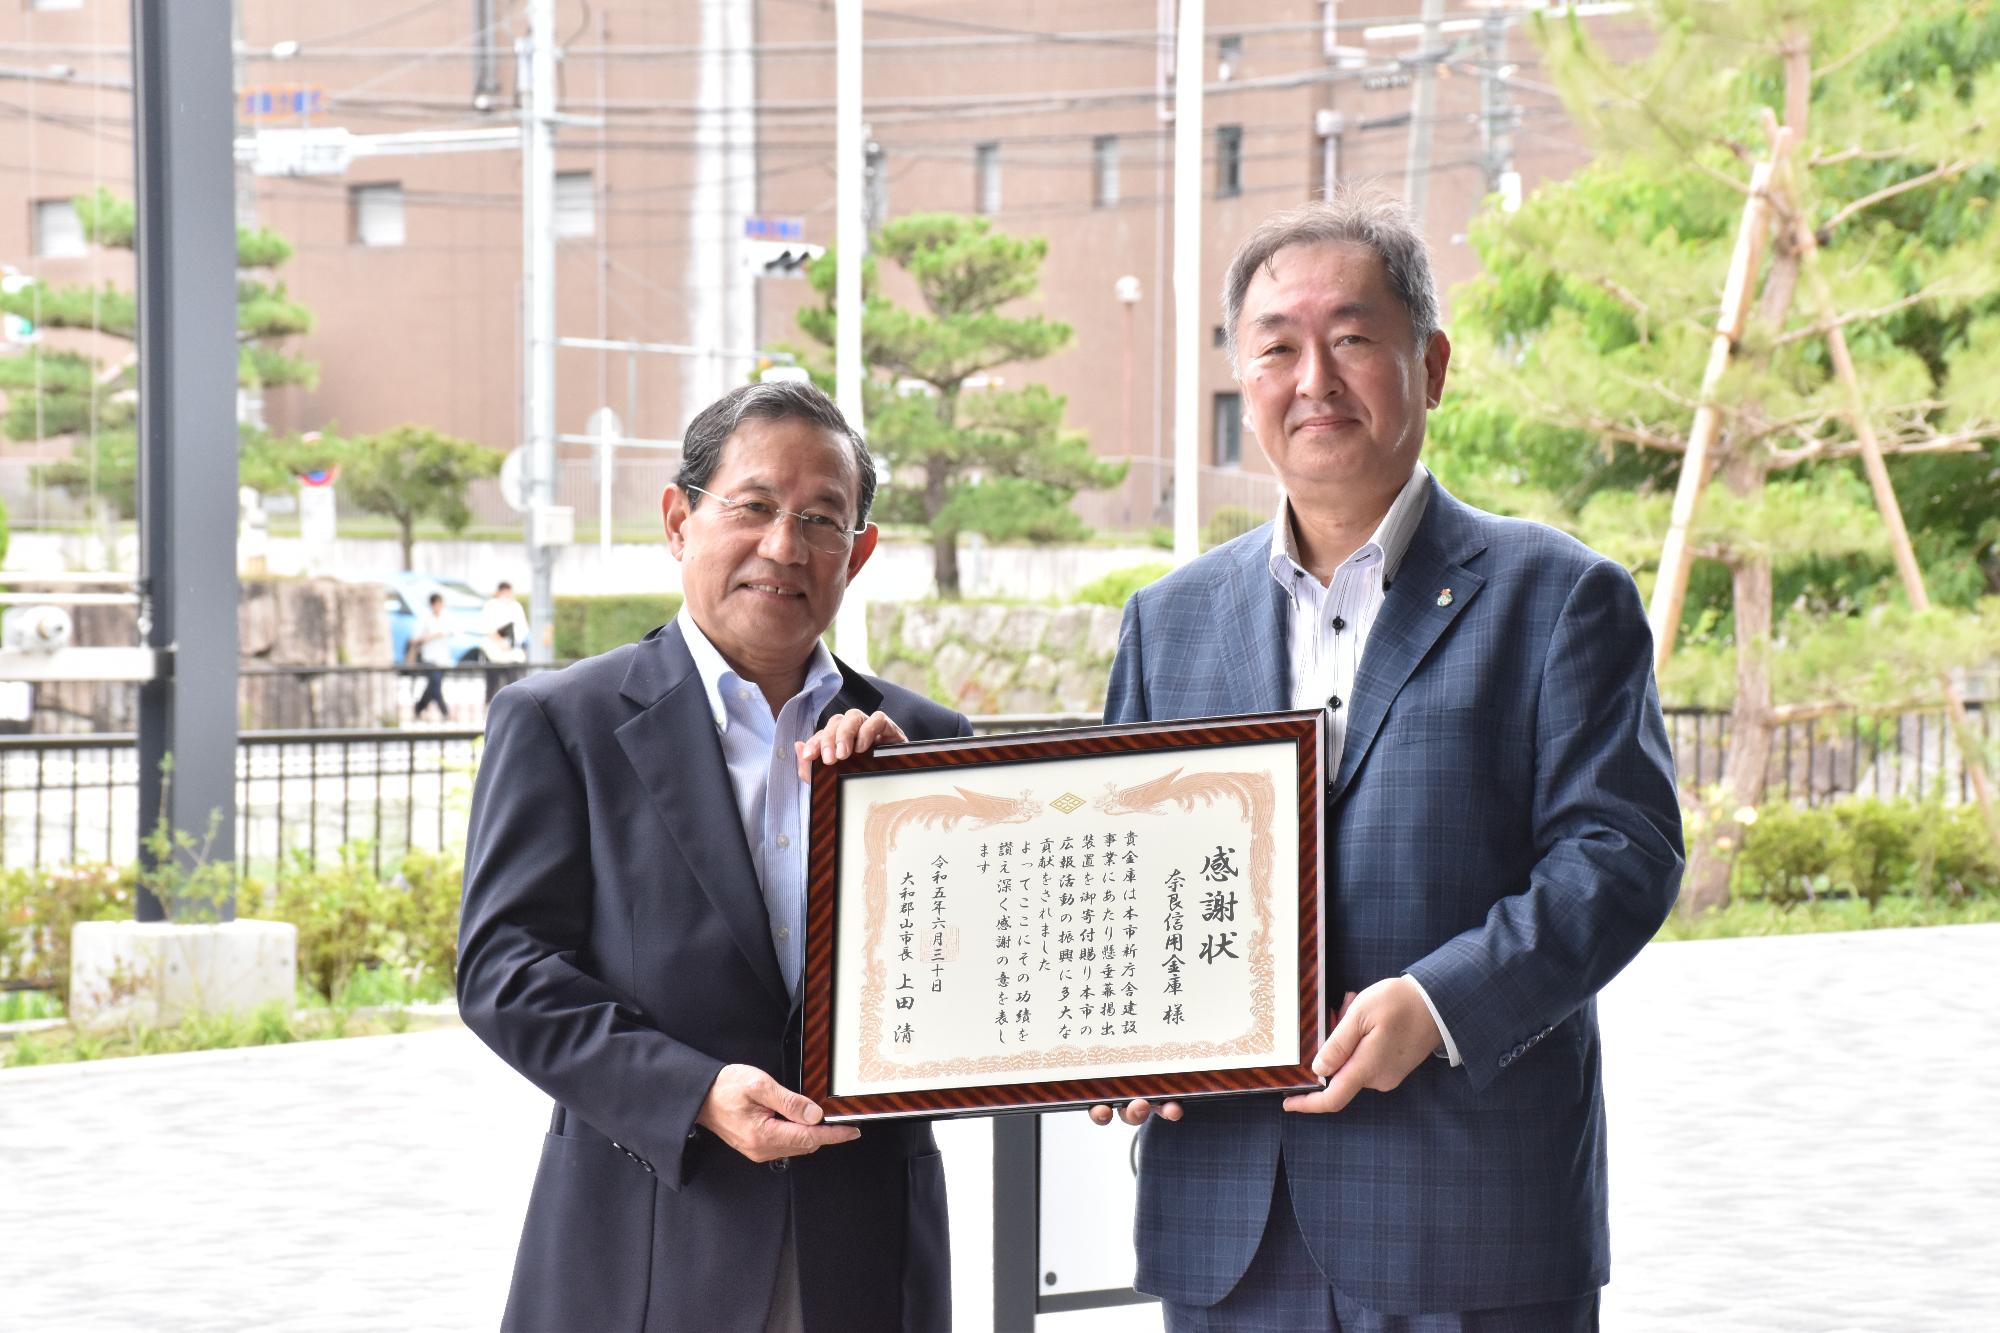 懸垂幕掲出装置の寄贈に対して、上田市長から奈良信用金庫の菊澤理事長へ感謝状が贈呈された